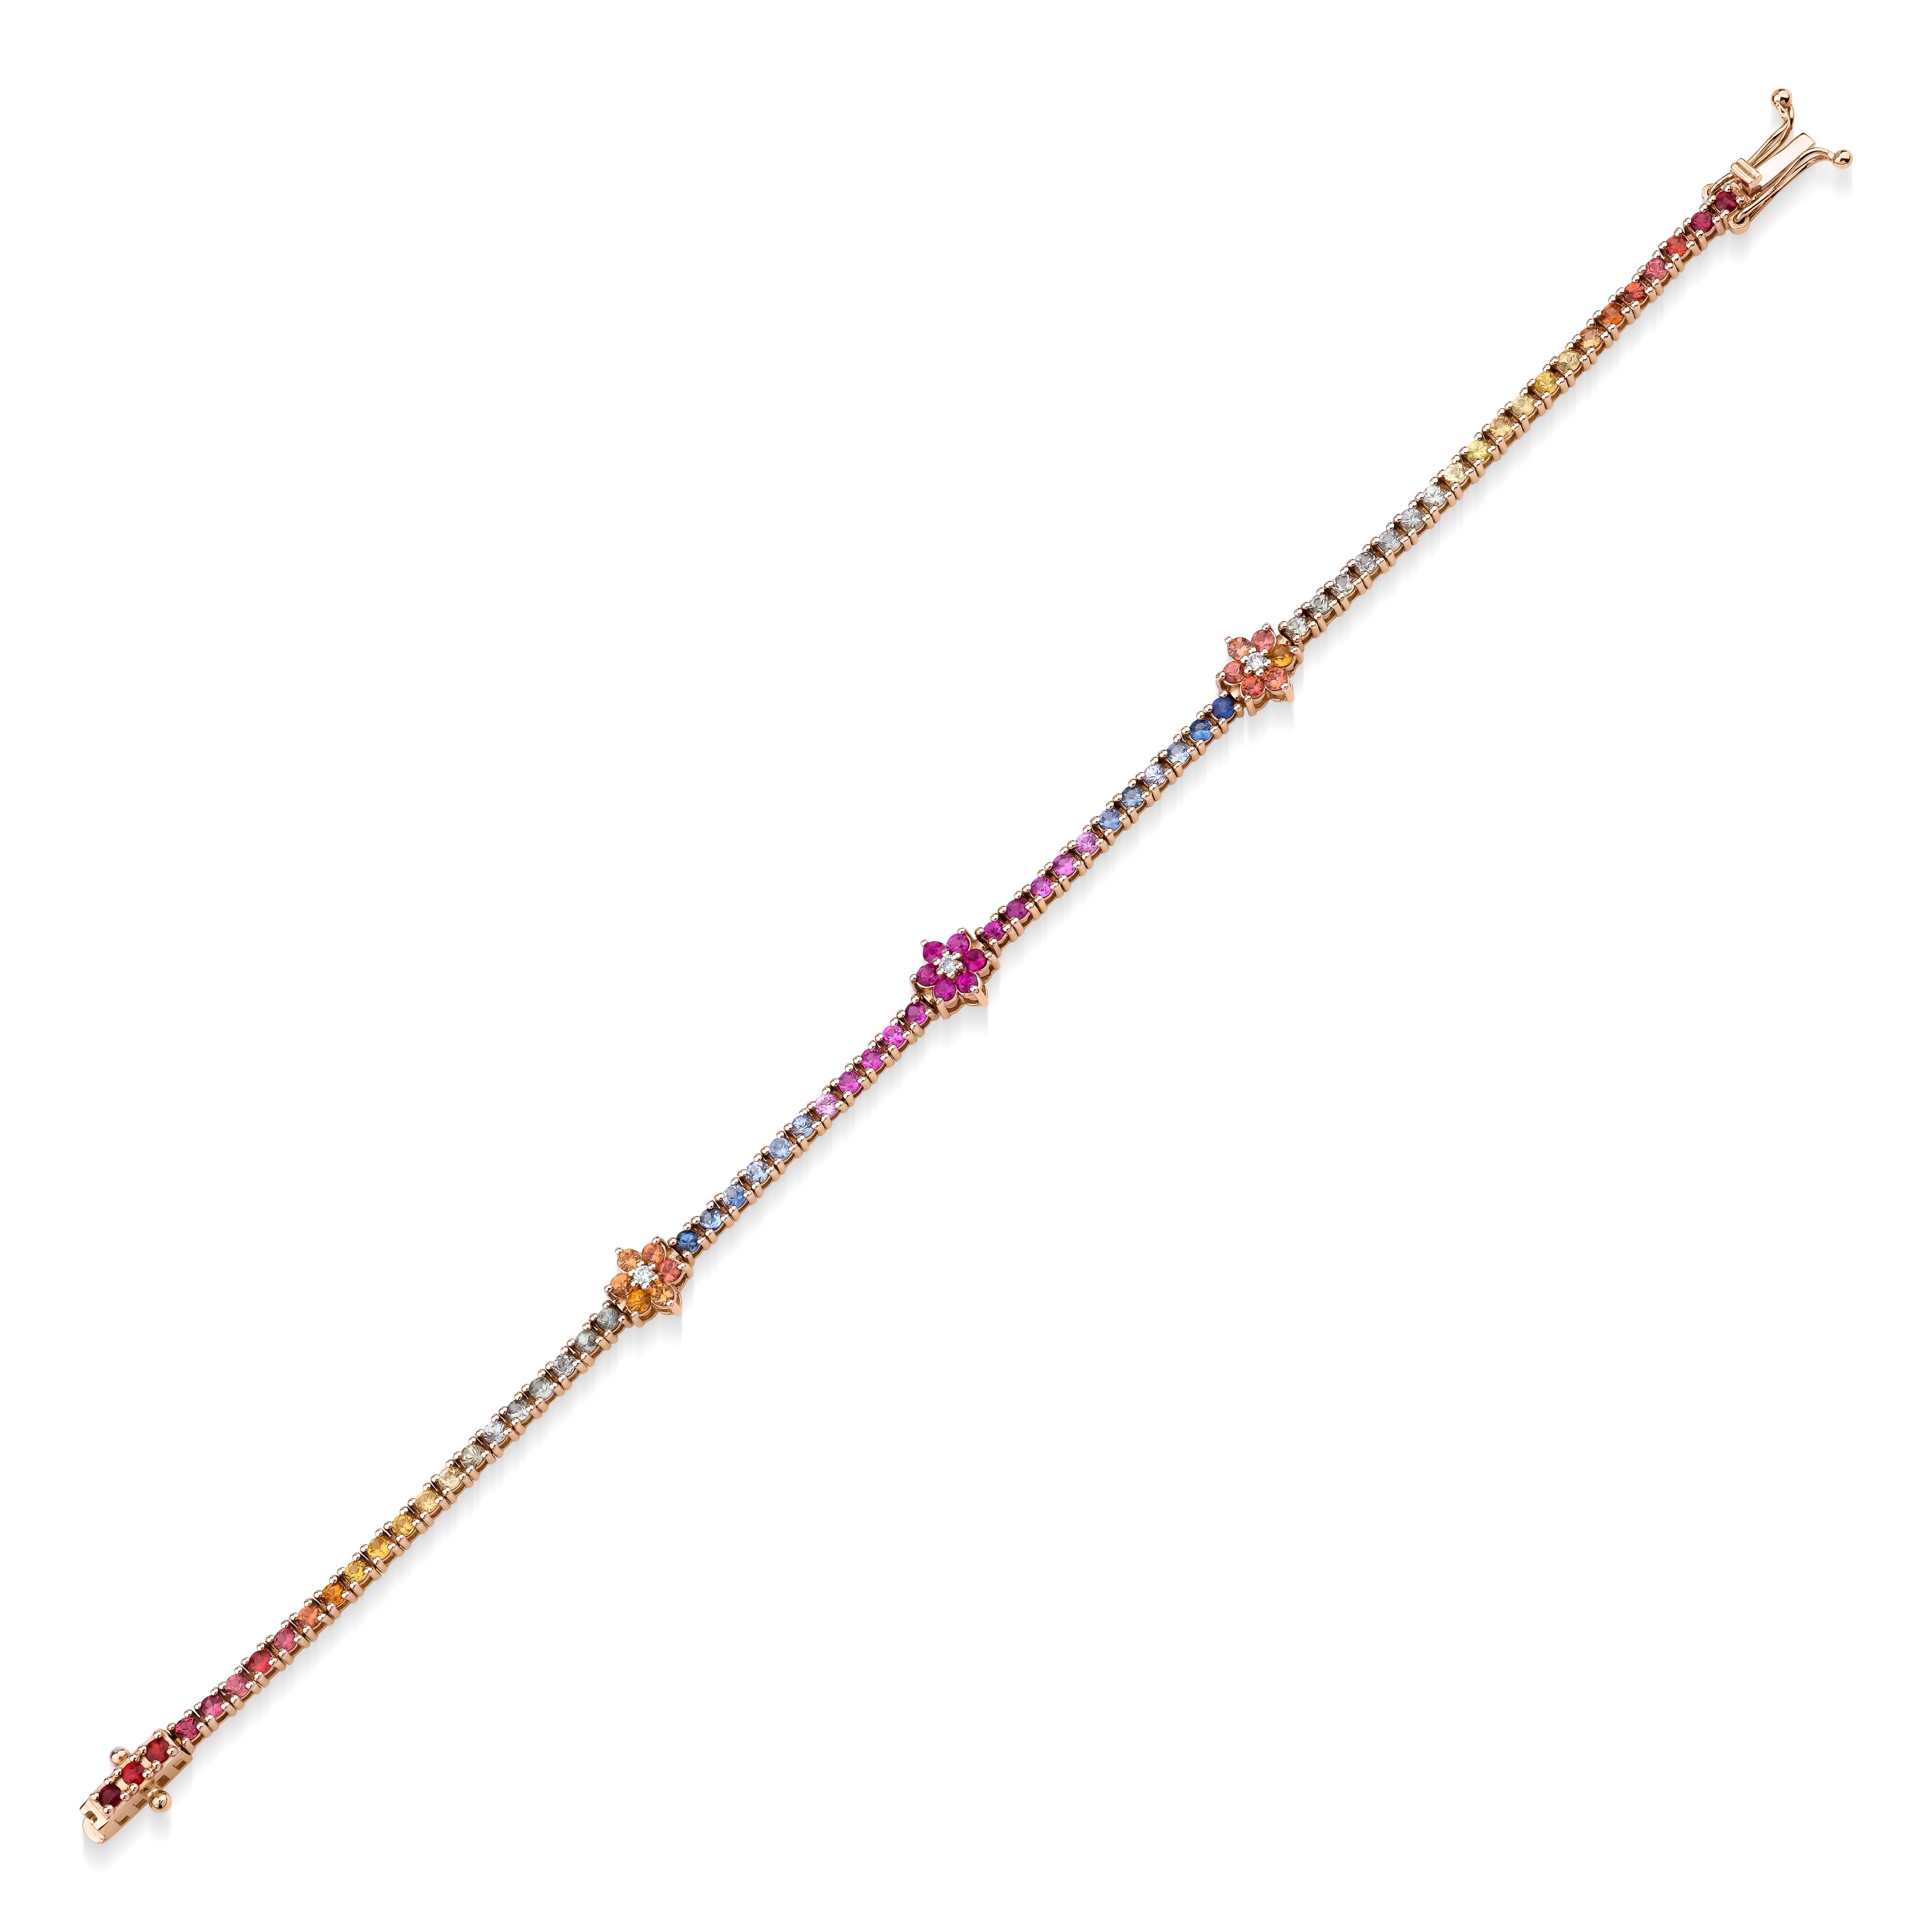 Floral Design Rainbow Sapphire 3.26ct Tennis Bracelet